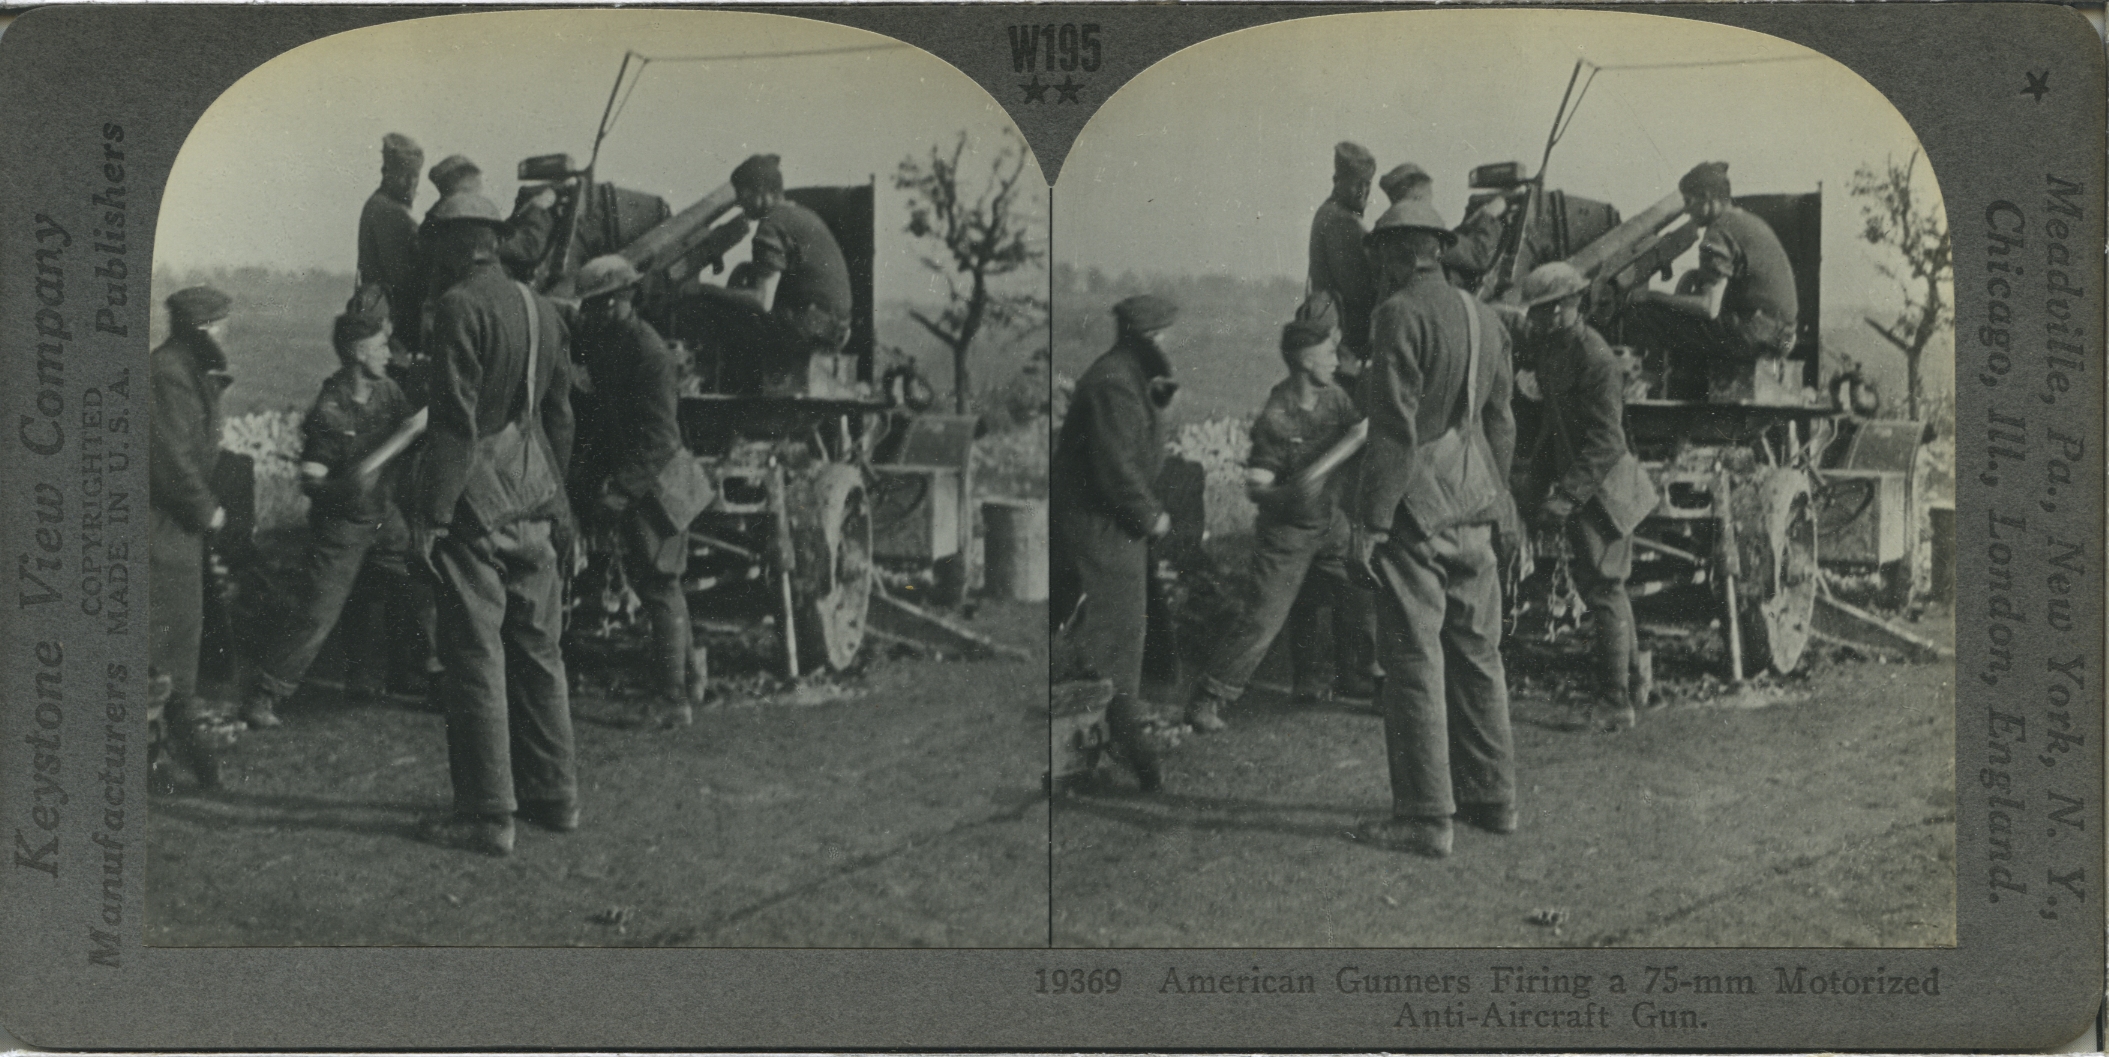 American Gunners Firing a 75-mm Motorized Anti-Aircraft Gun